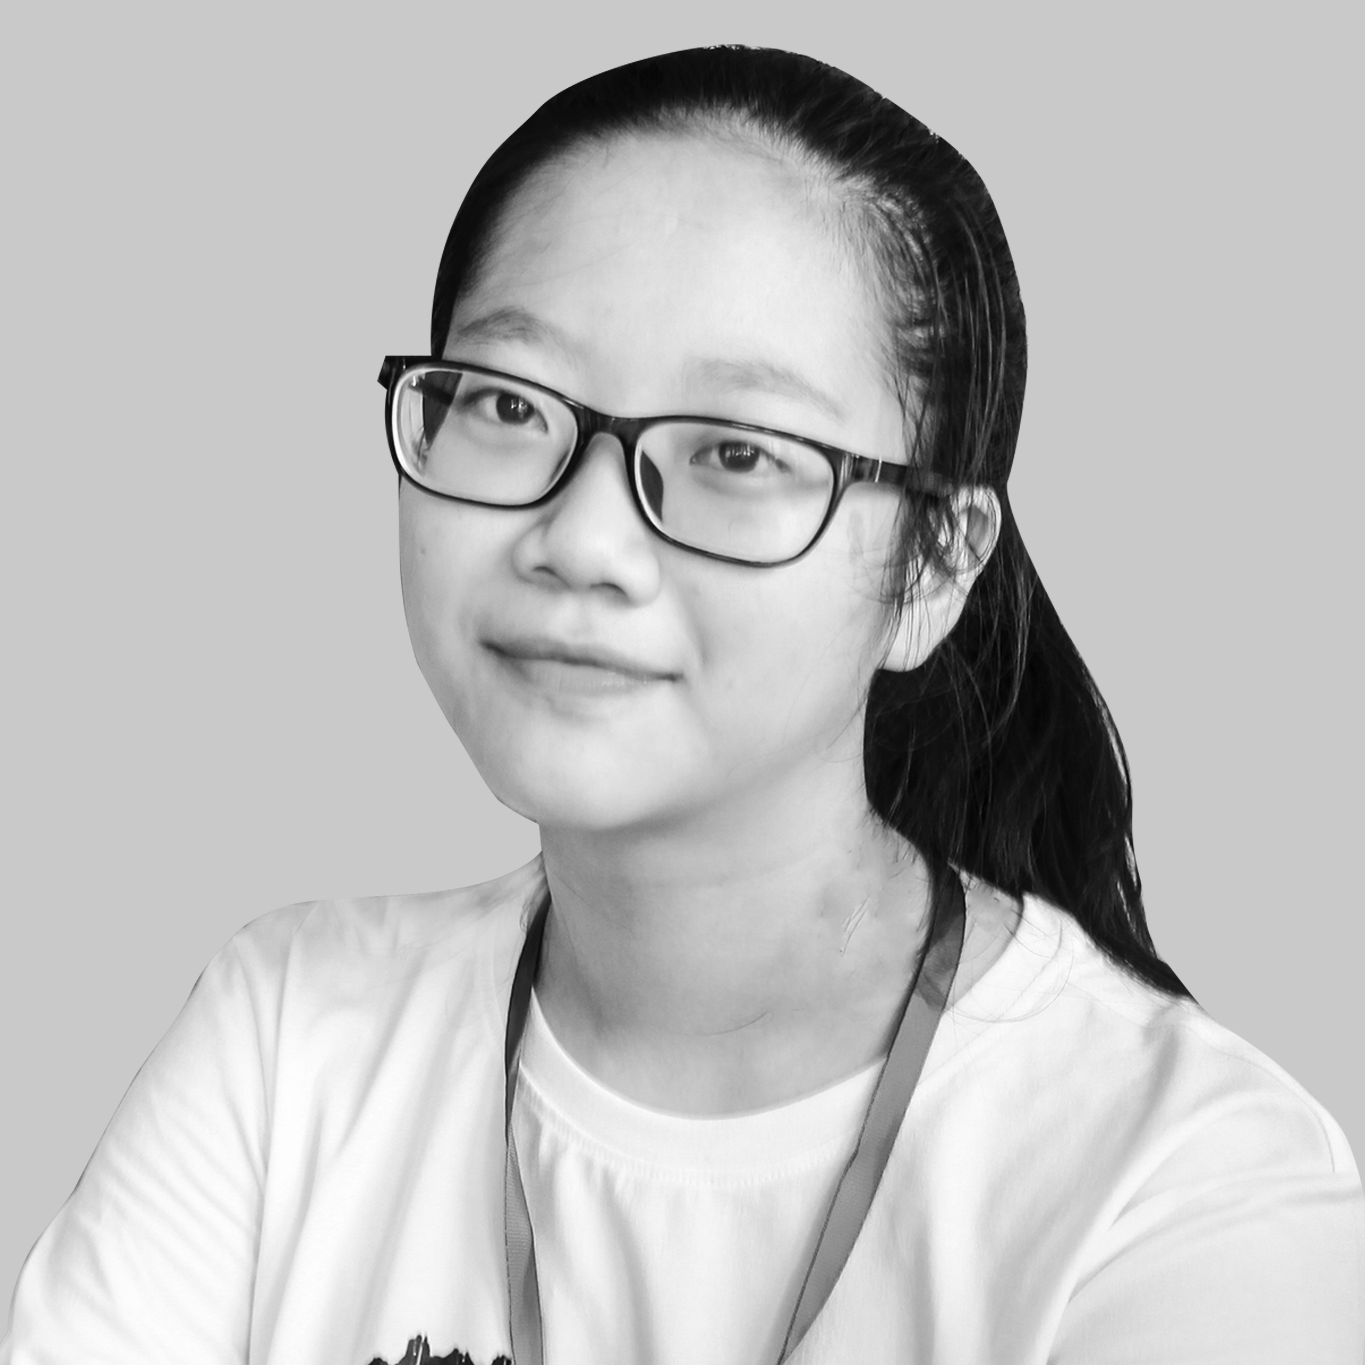 Nguyễn Việt Hà – 111 TOEFL